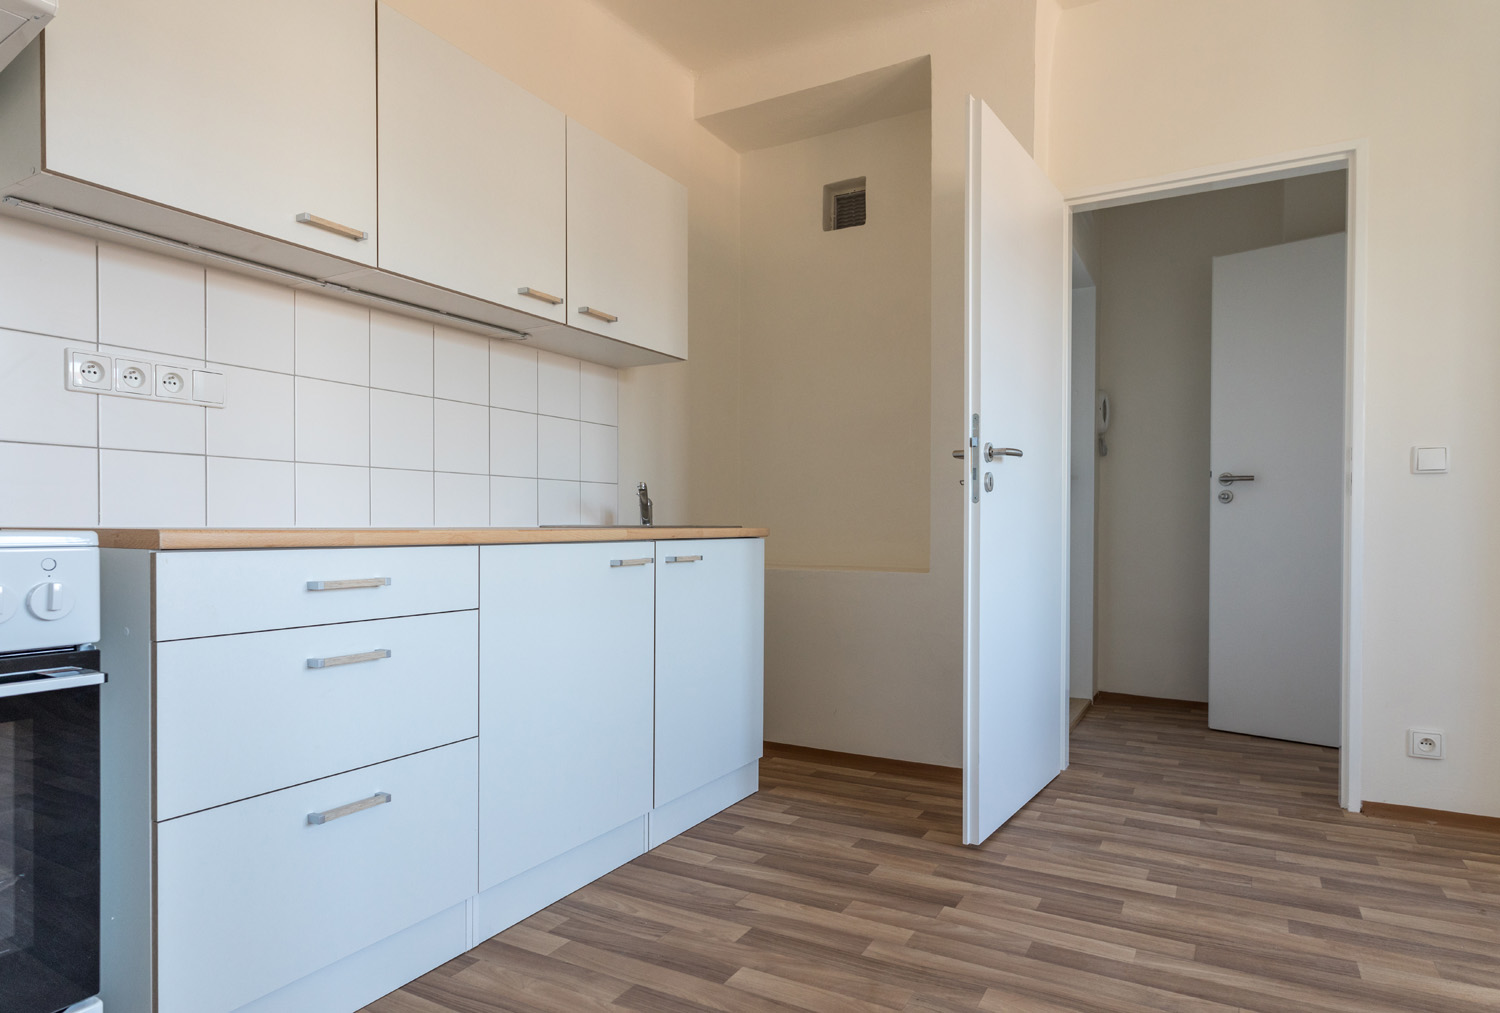 Rekonstrukce bytů pro sociální bydlení, Brno, 2. skupina